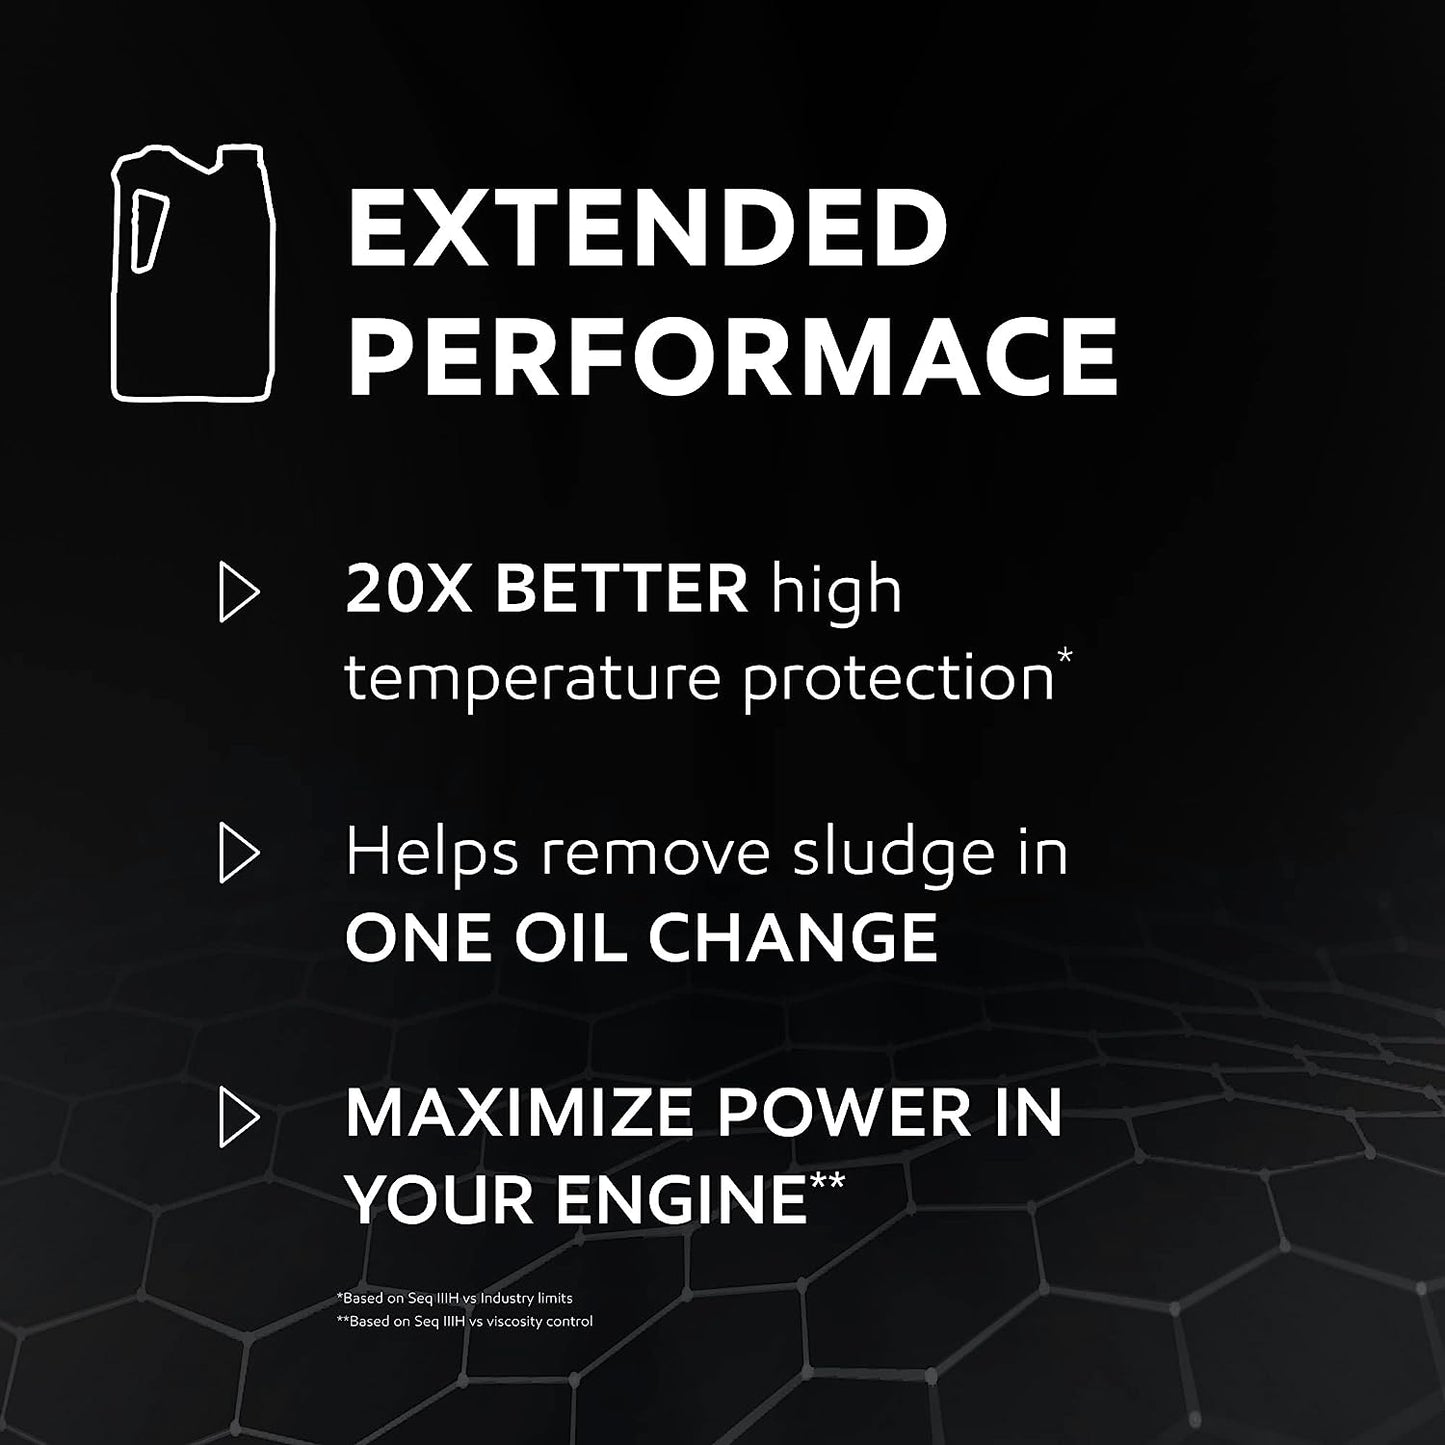 Mobil 1 Extended Performance Full Synthetic Motor Oil 0W-20, 5 Quart